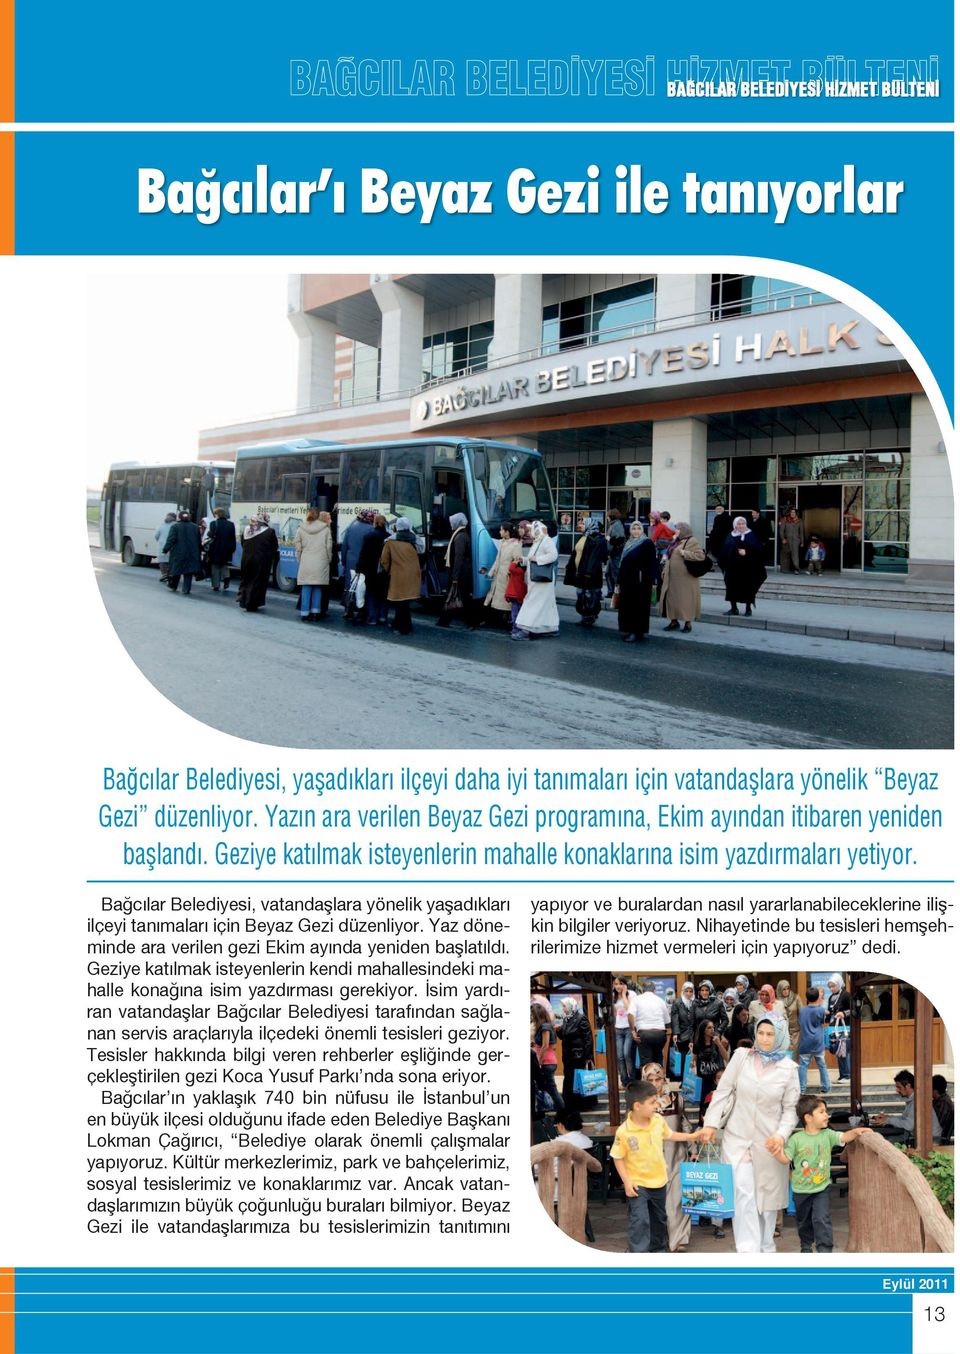 Bağcılar Belediyesi, vatandaşlara yönelik yaşadıkları ilçeyi tanımaları için Beyaz Gezi düzenliyor. Yaz döneminde ara verilen gezi Ekim ayında yeniden başlatıldı.